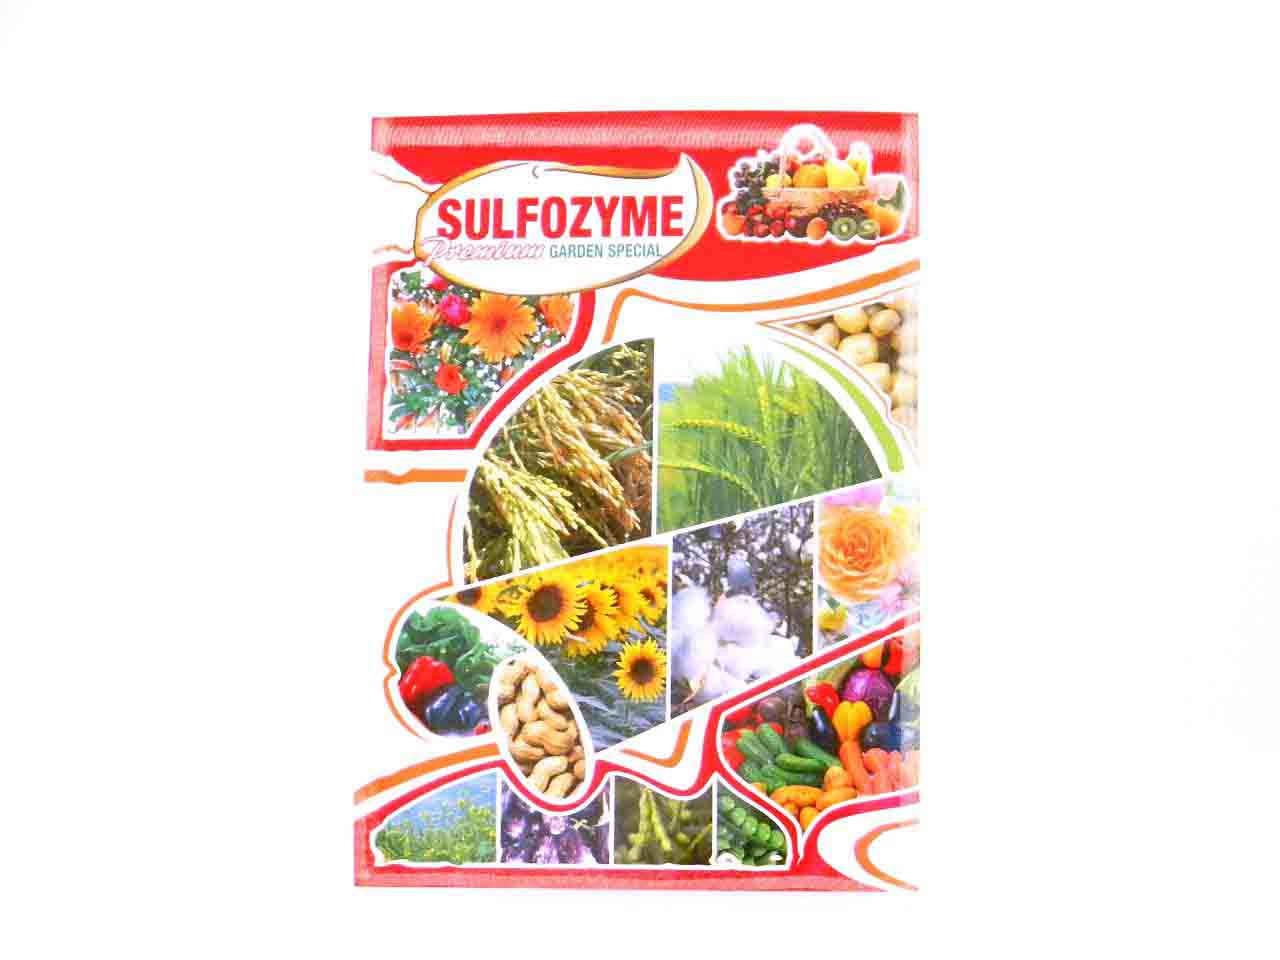 Sulfozyme Garden Special